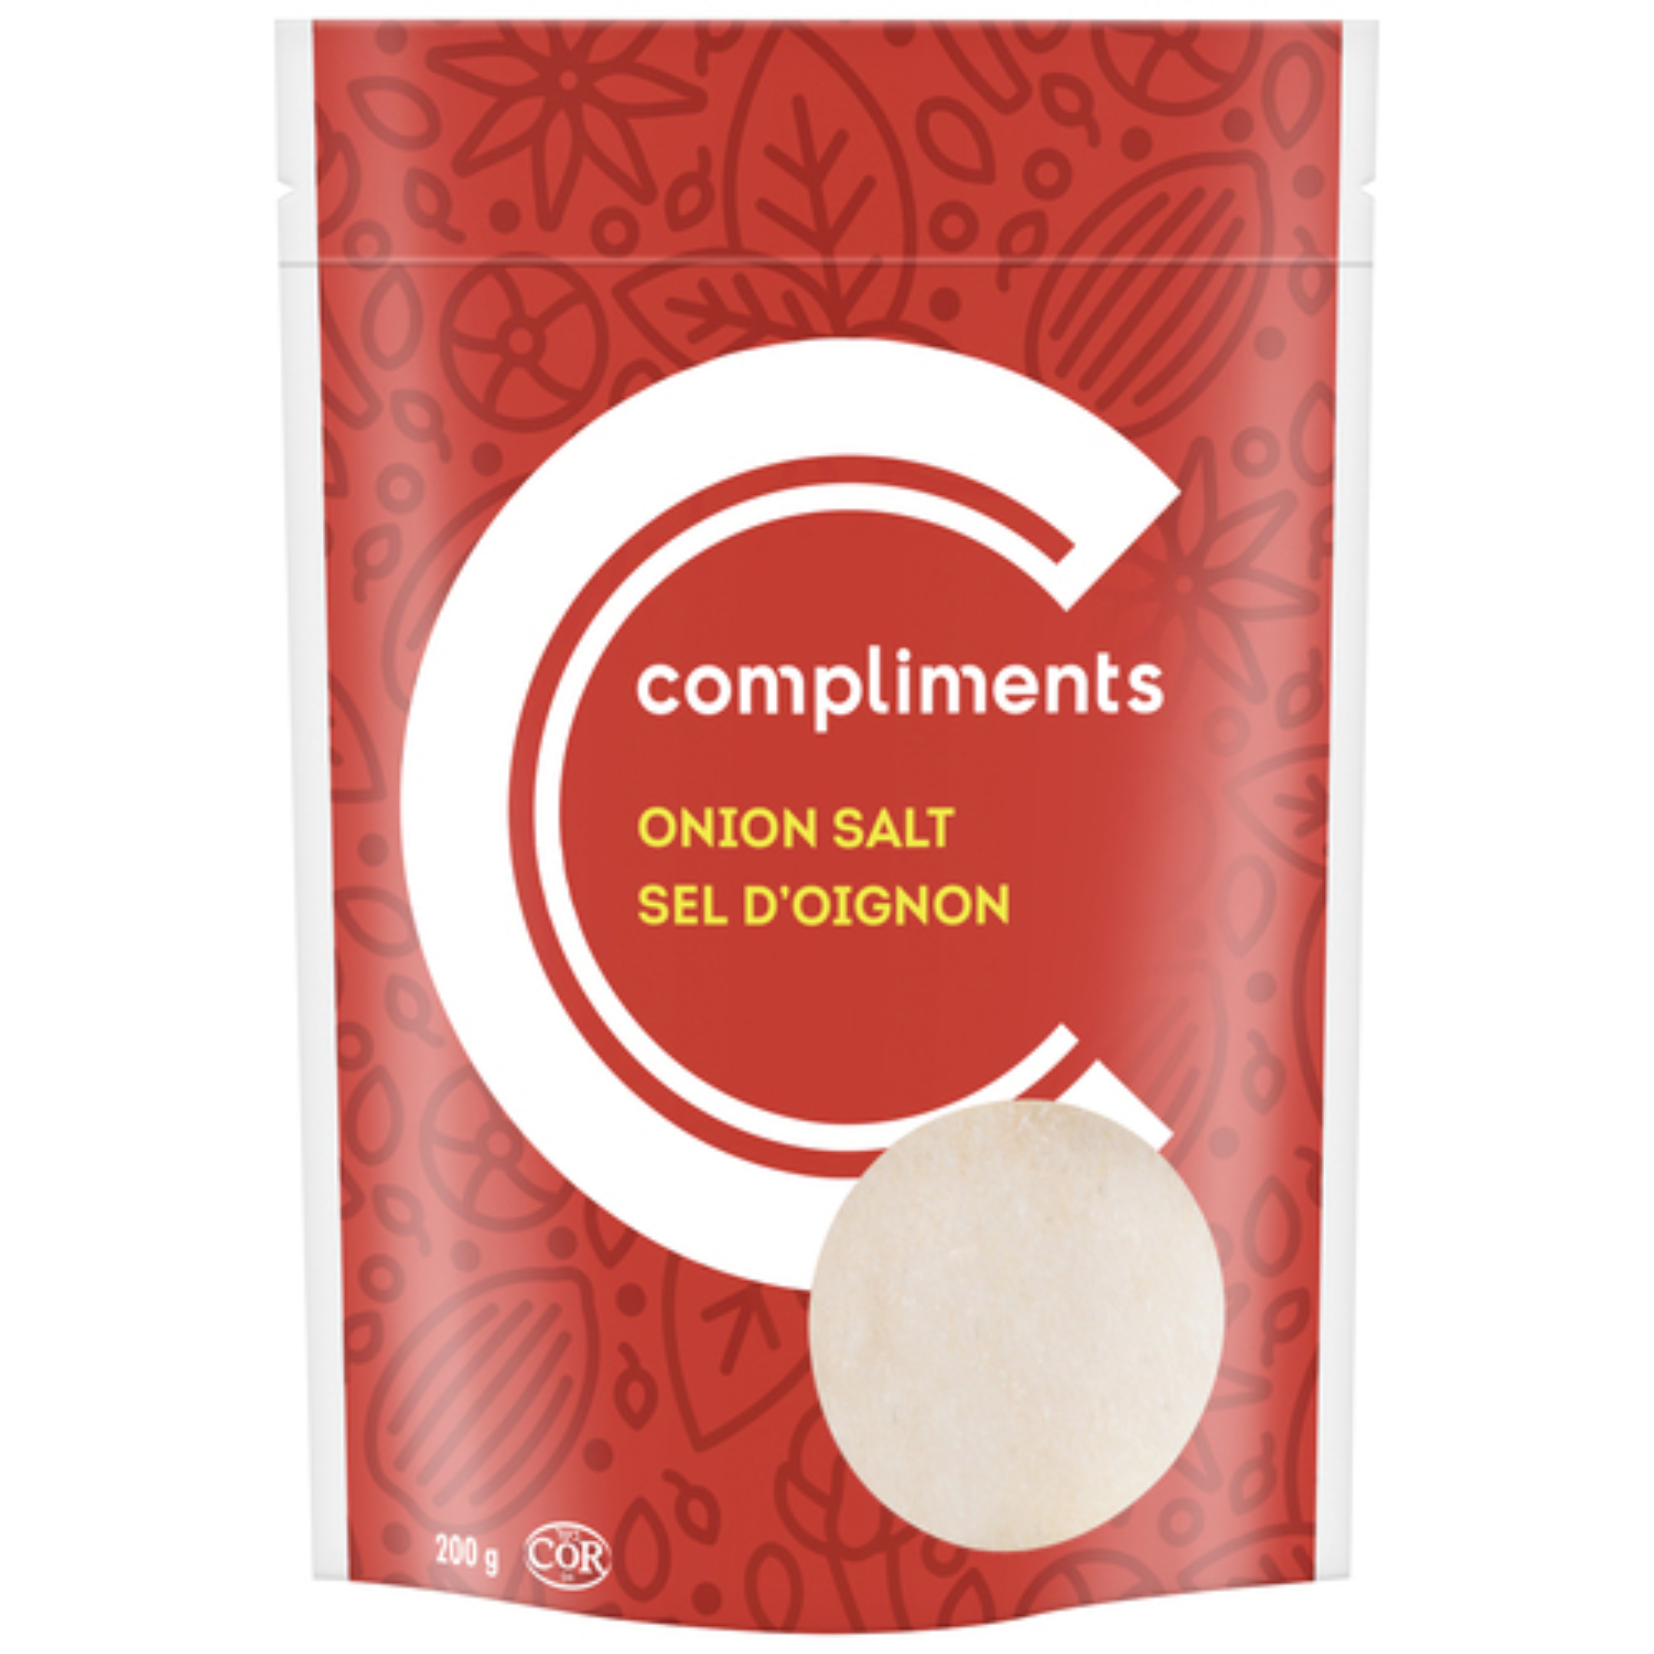 Compliments Onion Salt 200g